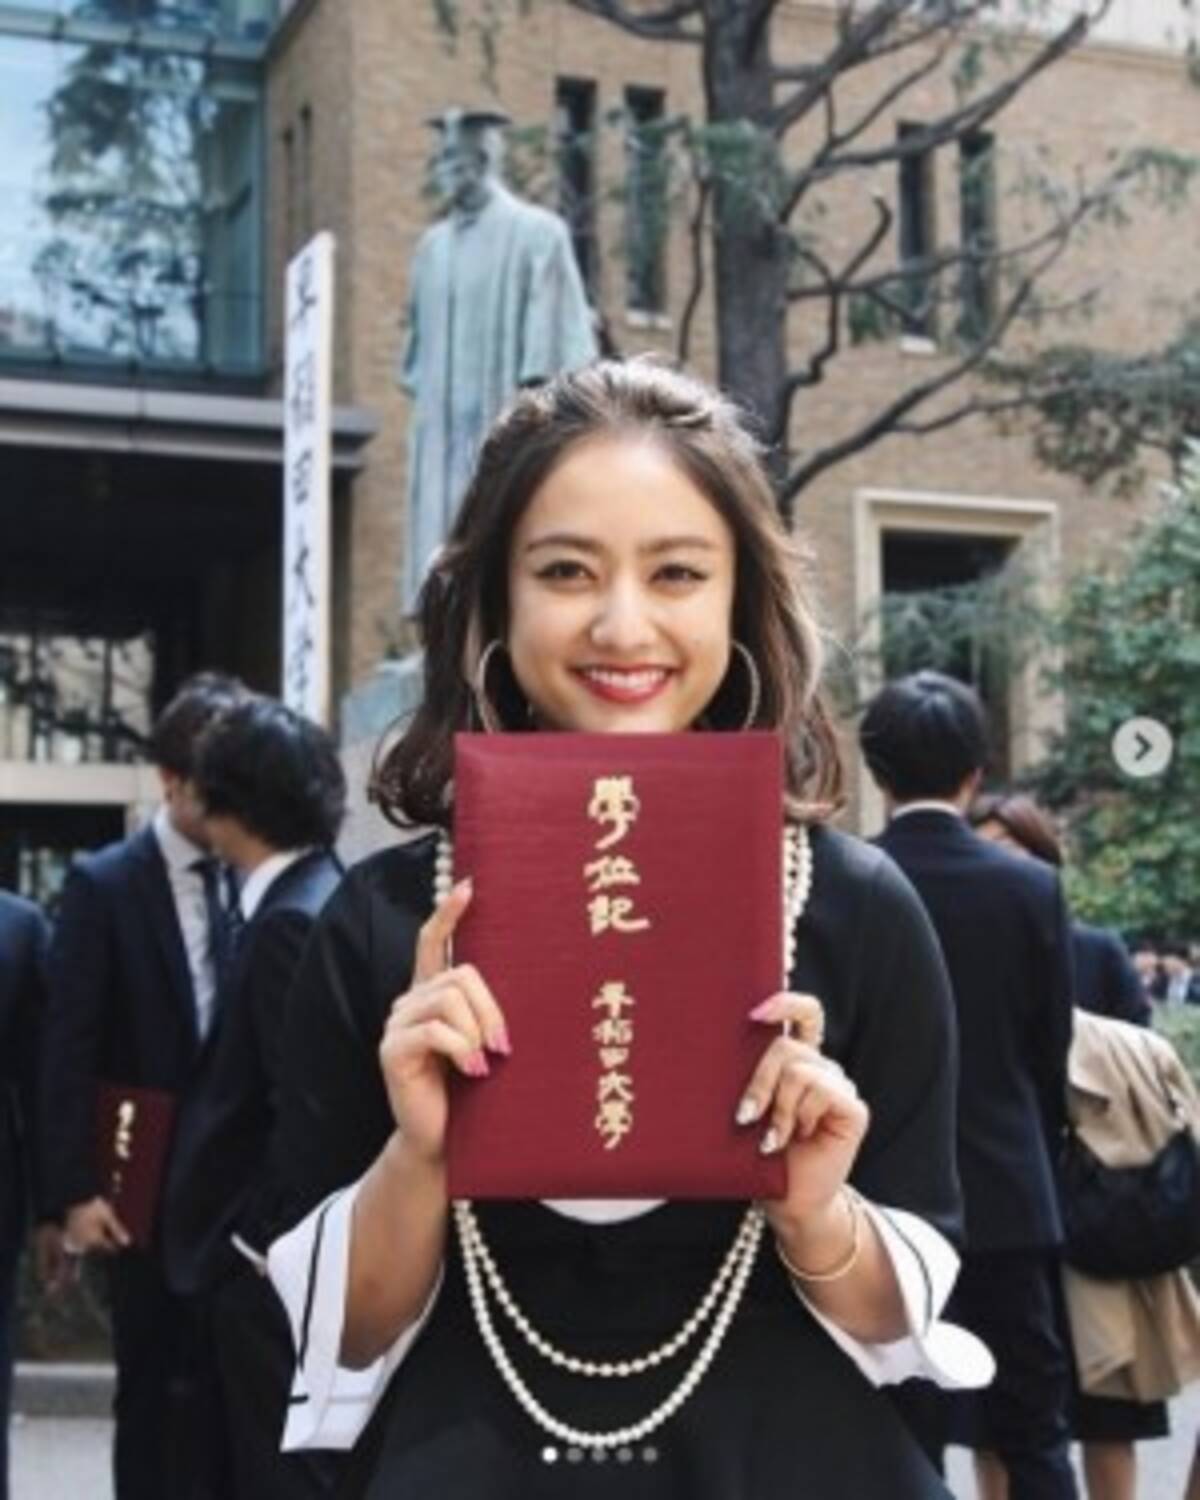 谷まりあ 早稲田大学卒業を報告 単位は夏学期で全取得 の余裕も 19年3月26日 エキサイトニュース